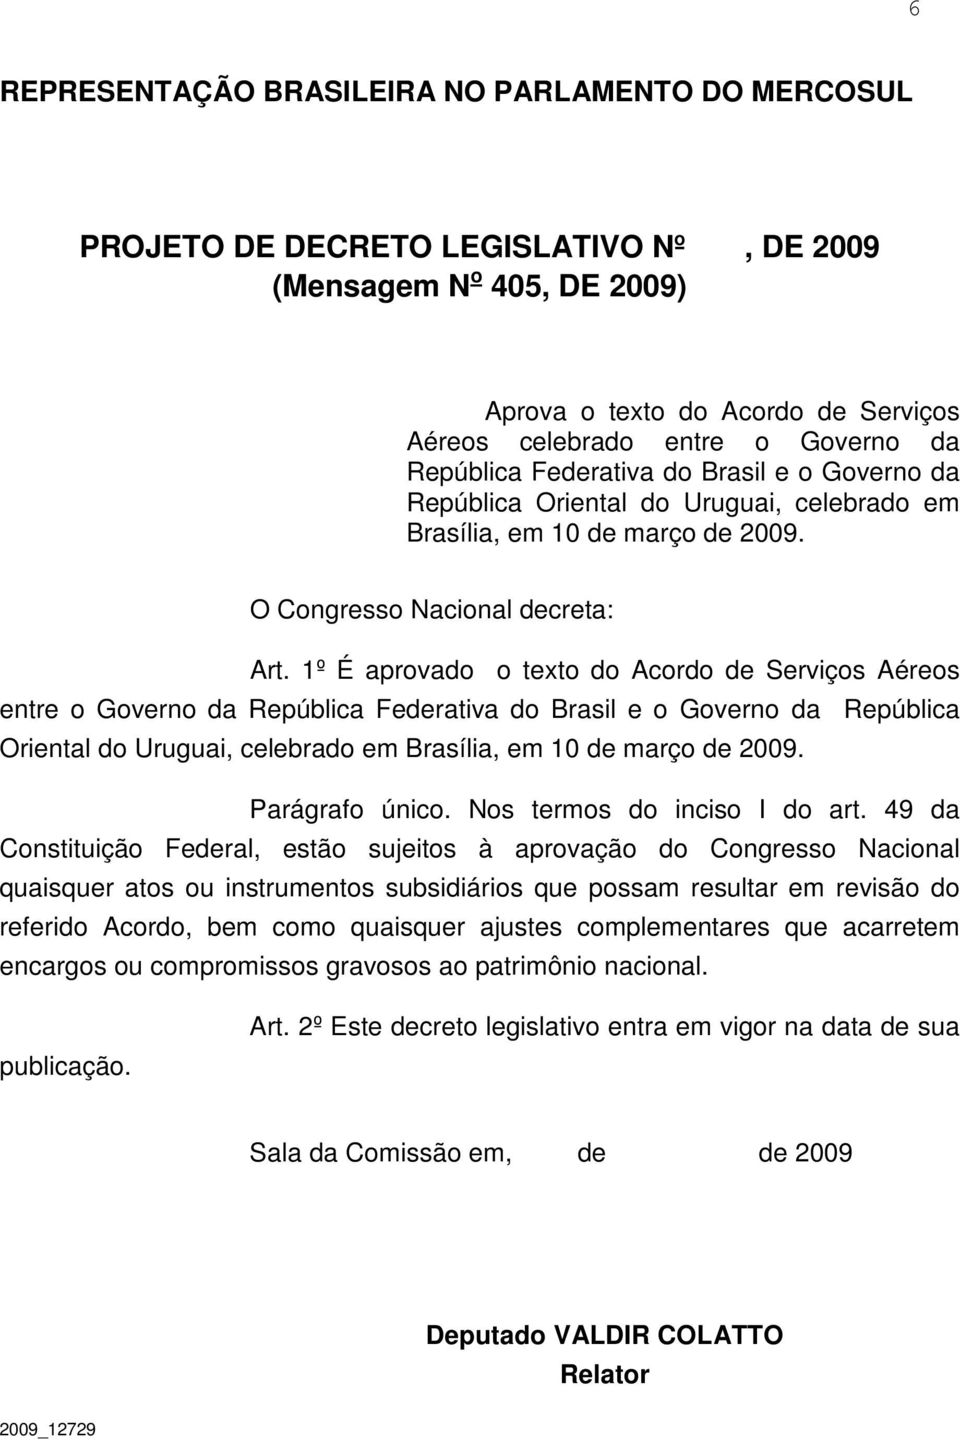 1º É aprovado o texto do Acordo de Serviços Aéreos entre o Governo da República Federativa do Brasil e o Governo da República Oriental do Uruguai, celebrado em Brasília, em 10 de março de 2009.